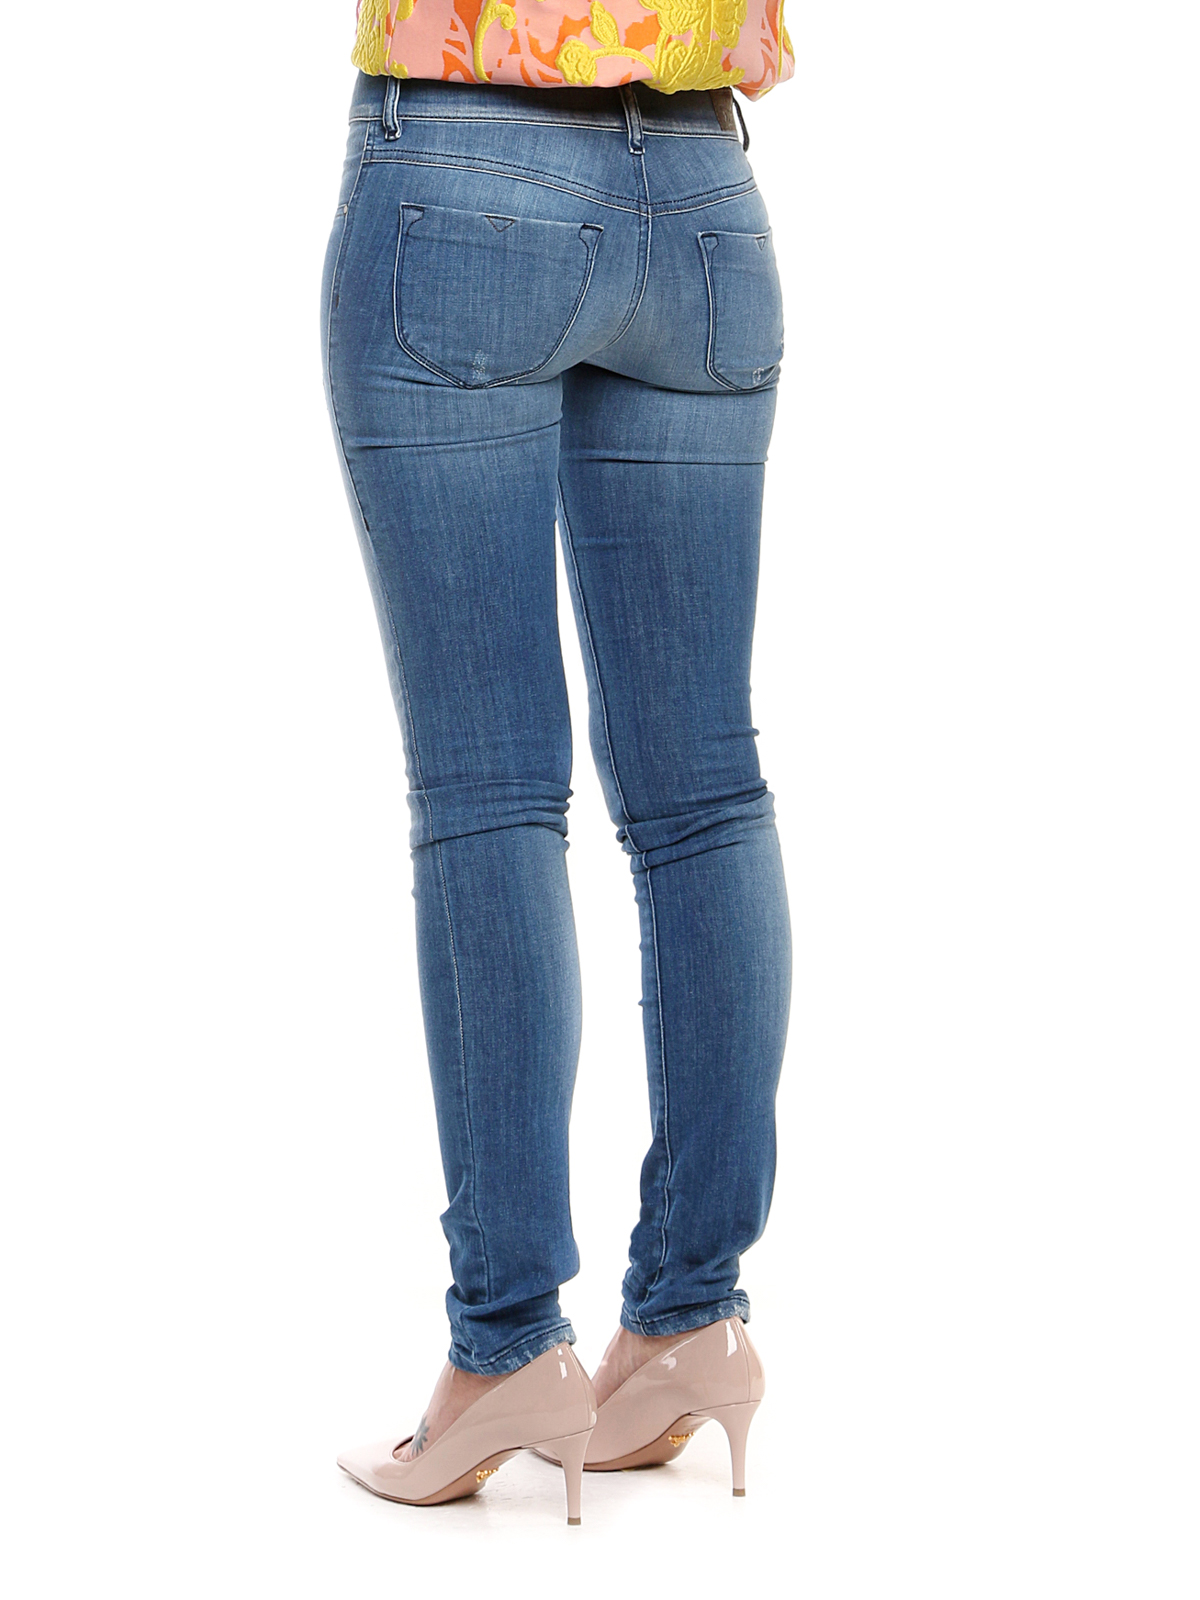 Skinny Diesel - Livier jeans | thebs.com [ikrix.com]